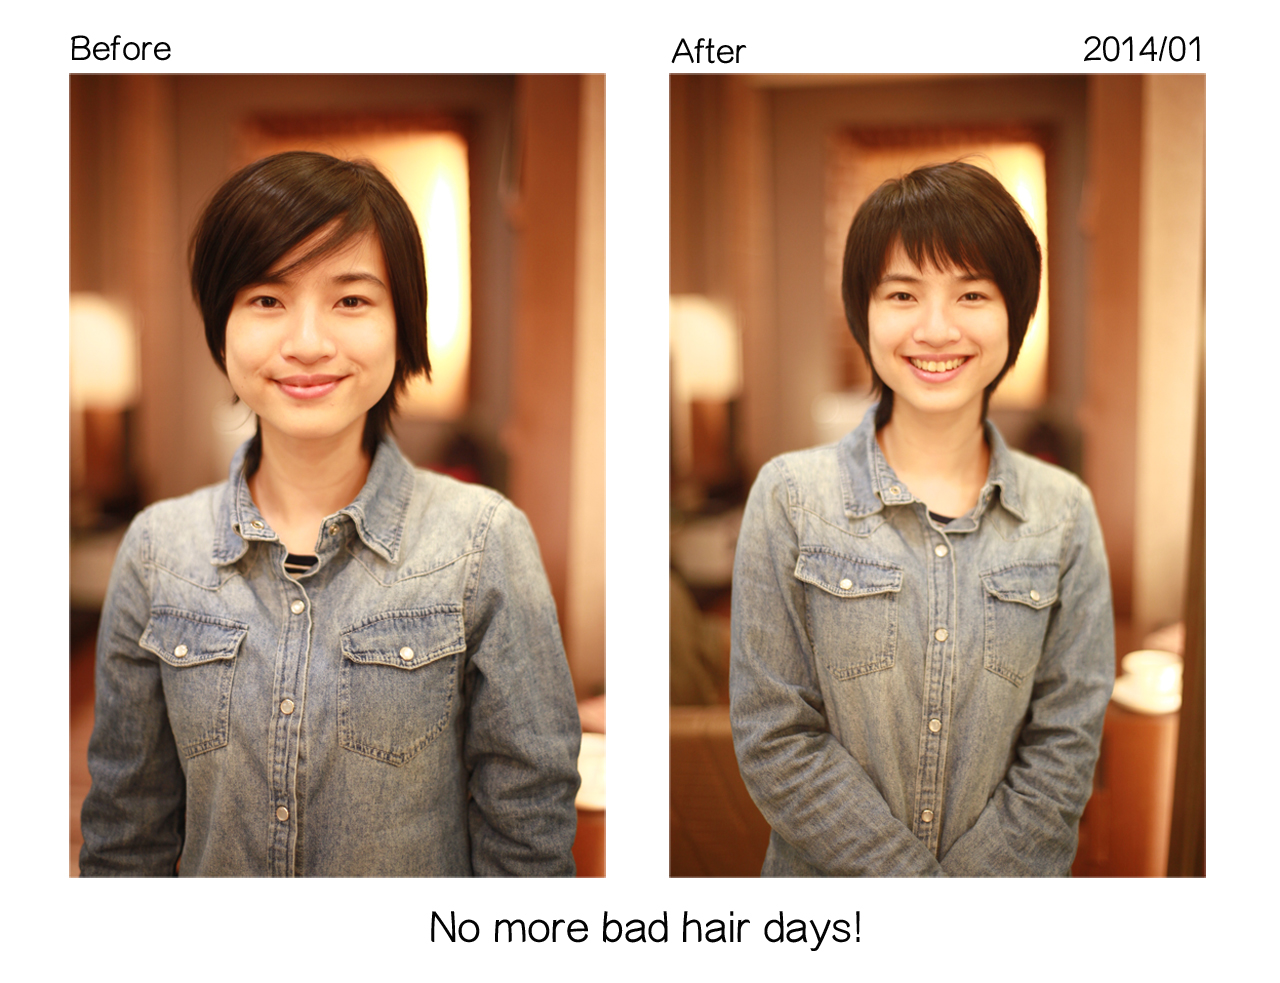 201401蘇小姐剪髮前後組圖1